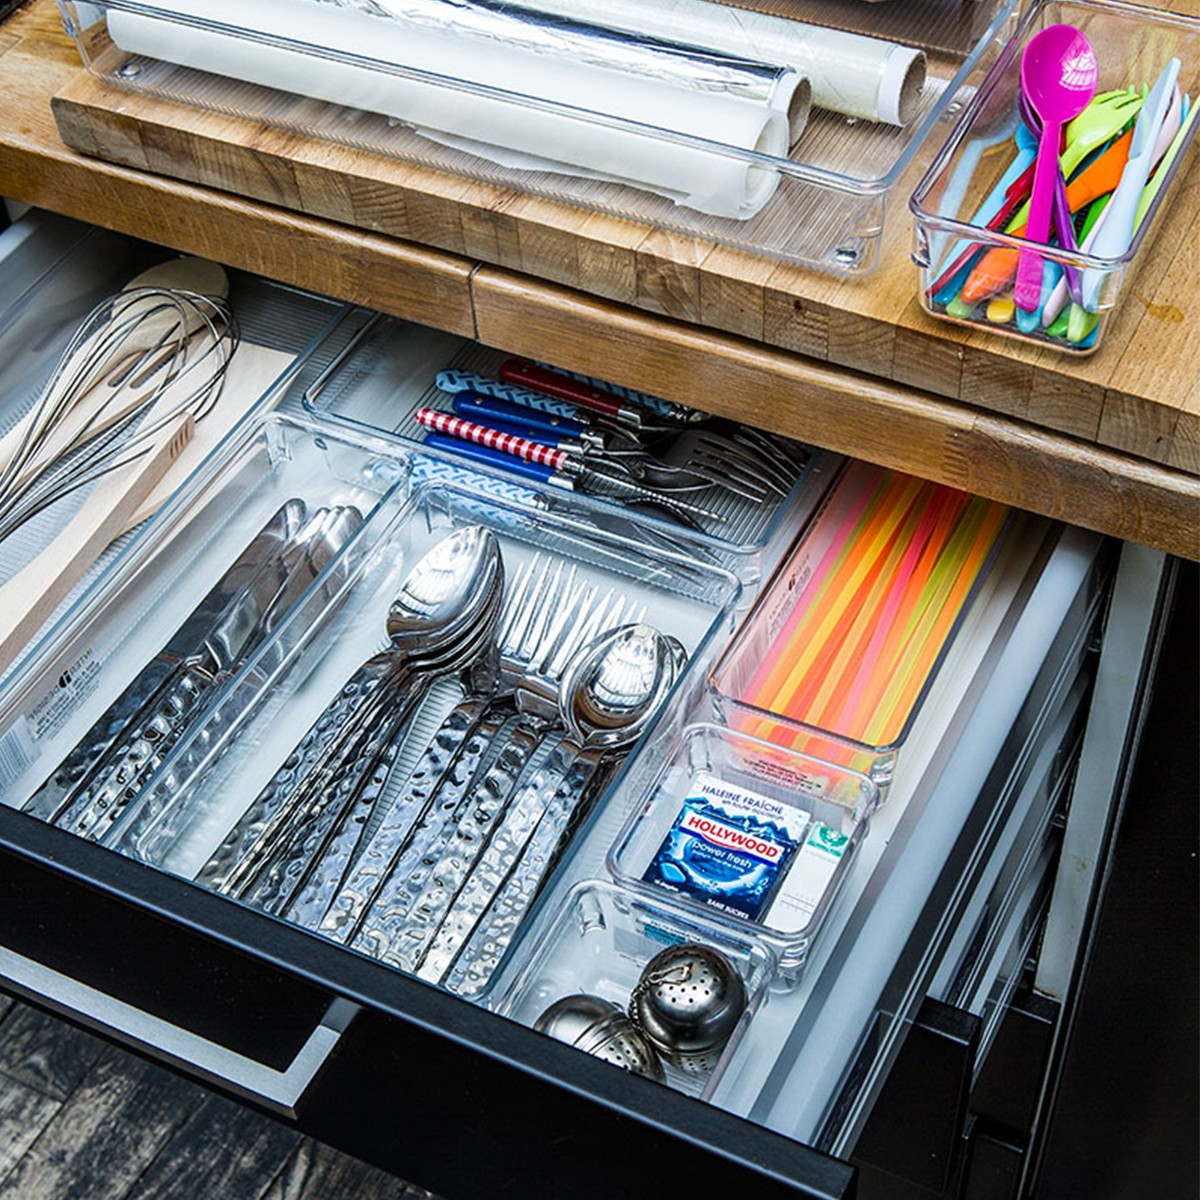 Séparateur de tiroir couverts acrylique - Rangement cuisine - ON